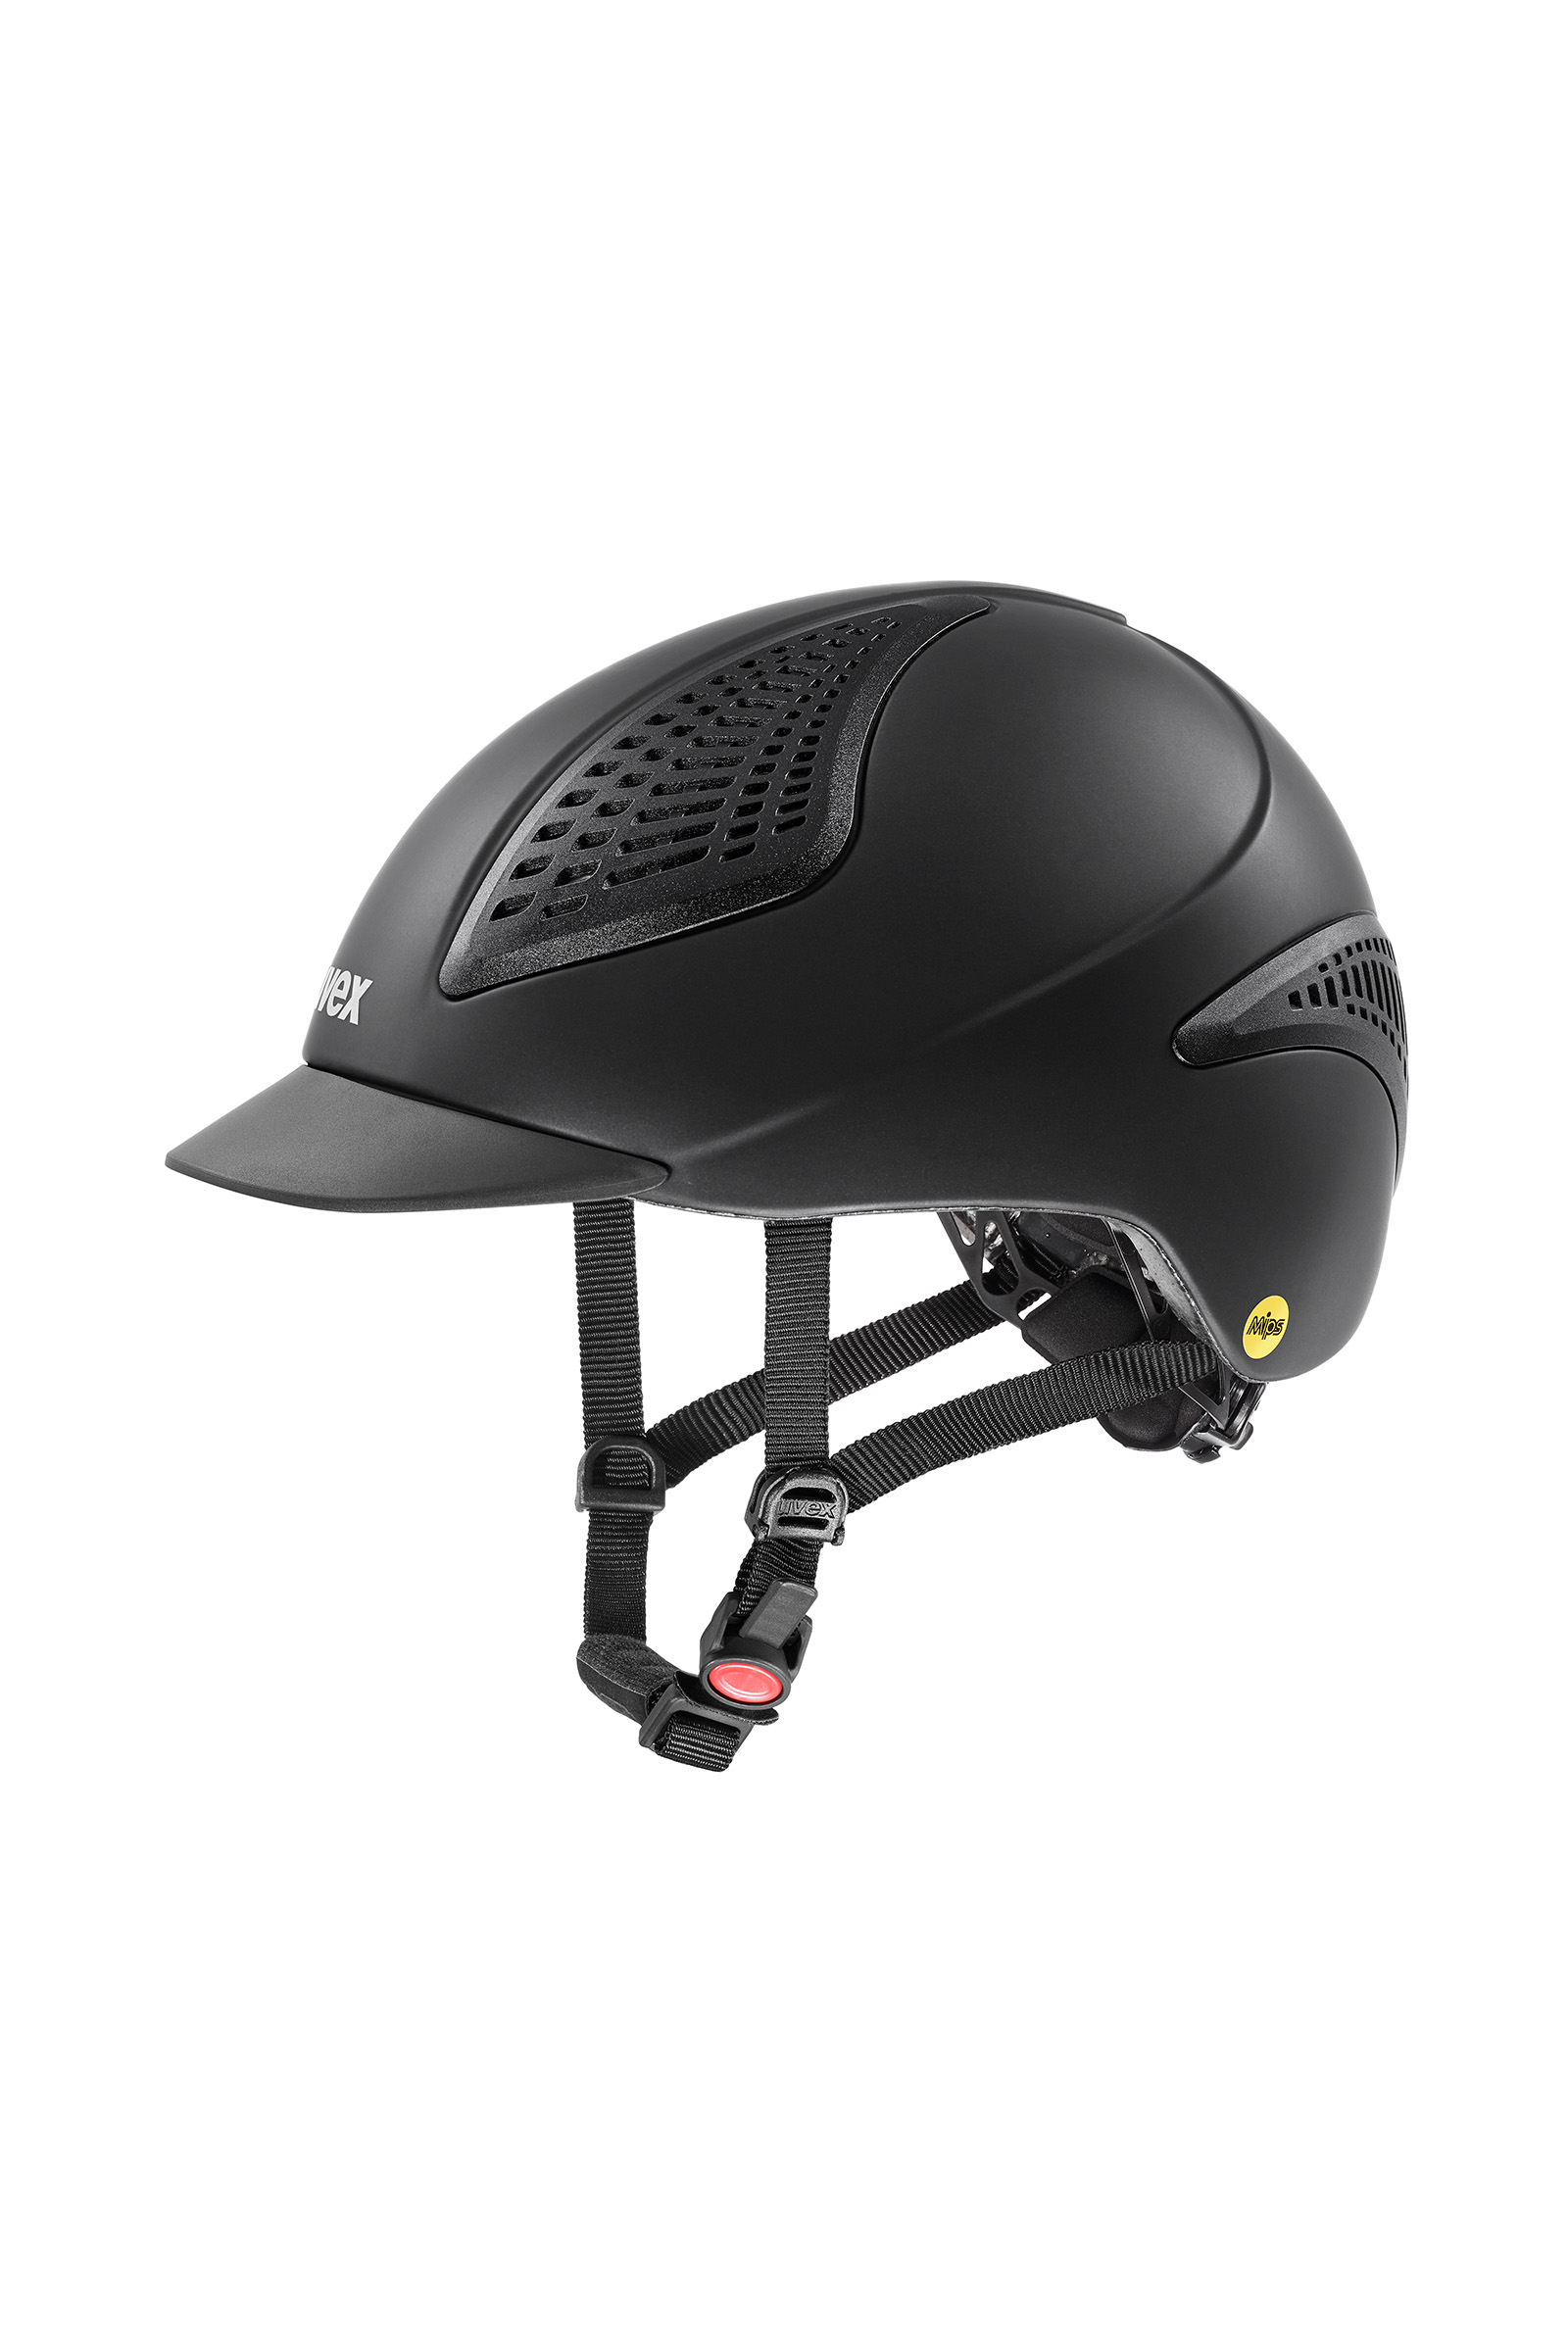 Dripex Casque Bluetooth pour moto, casque d'équitation, casque